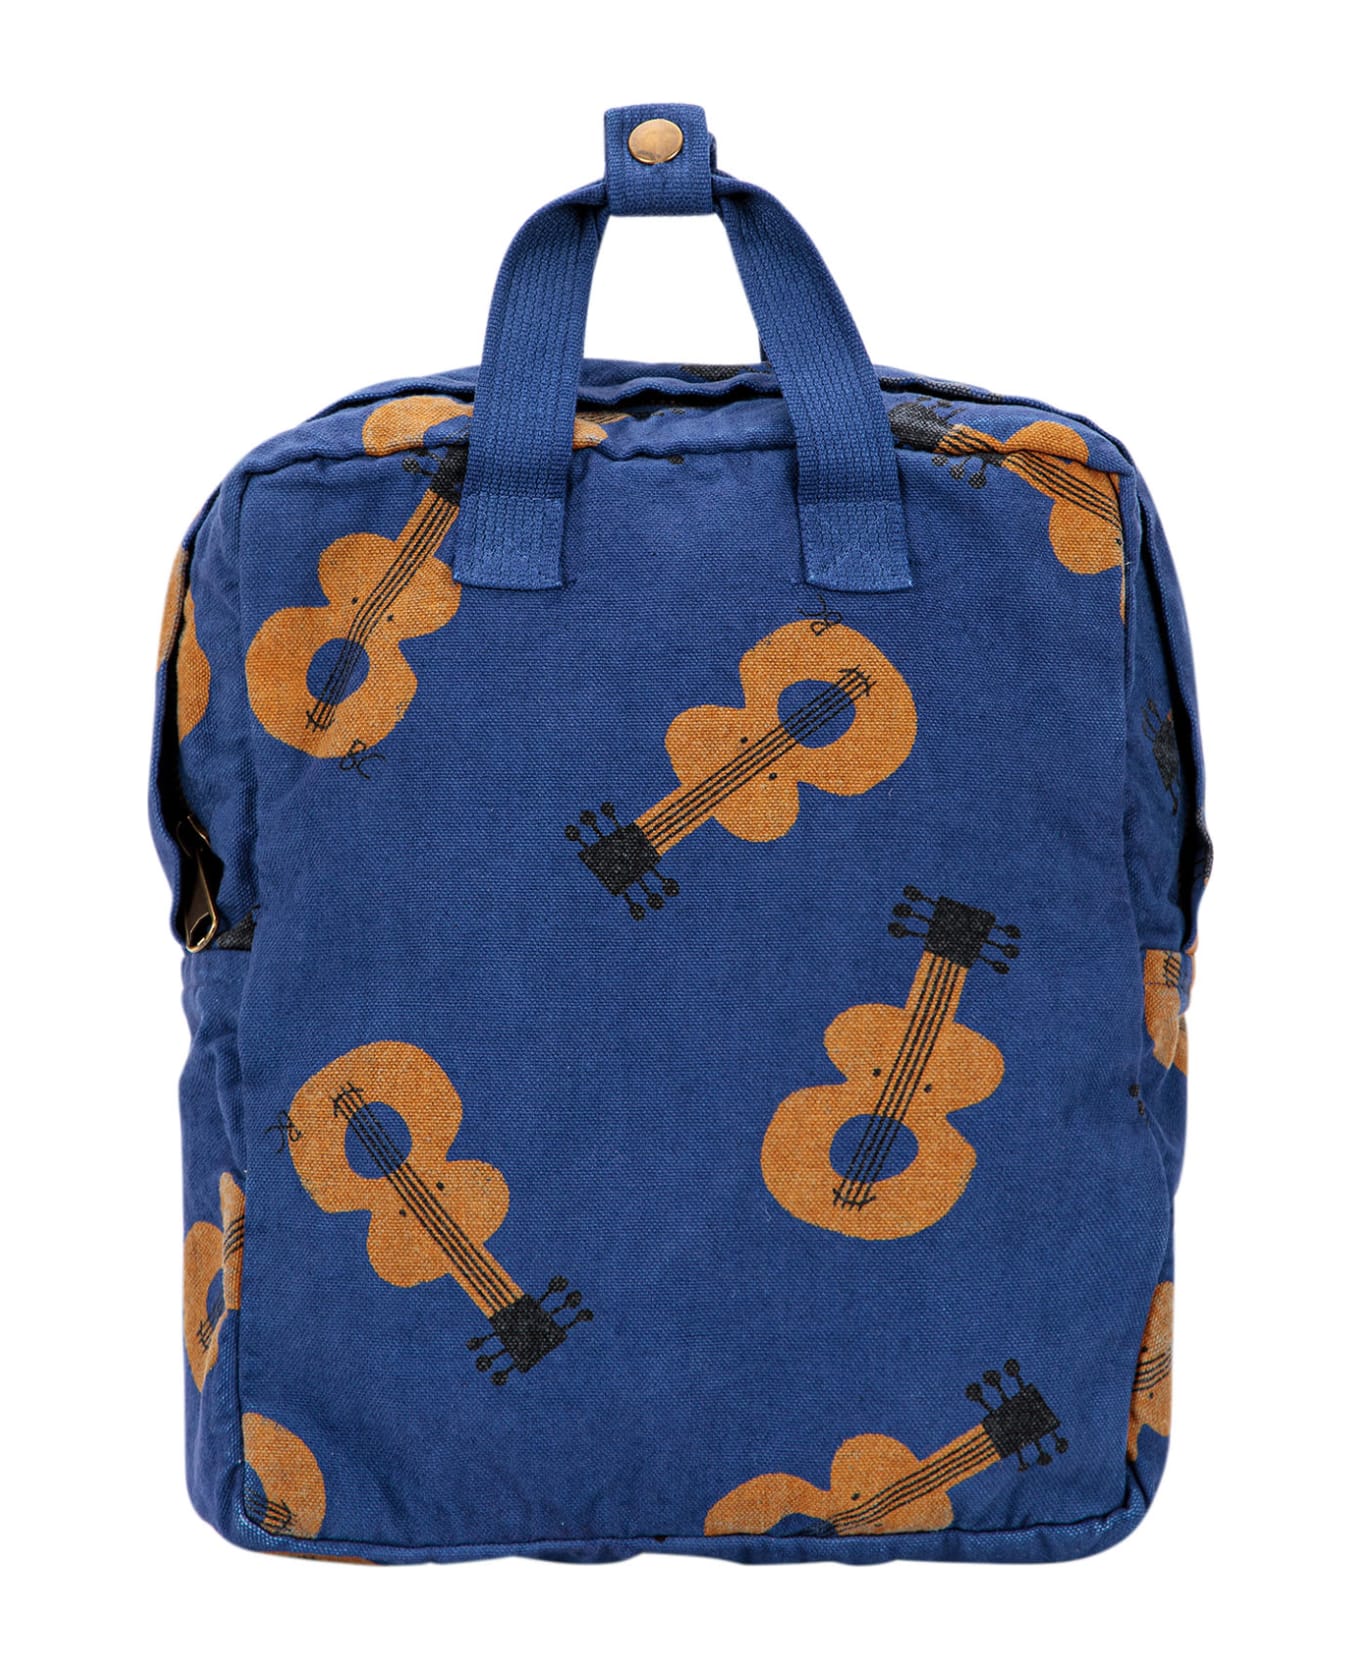 Bobo Choses Blue Backpack With Violins For Kids - Violet